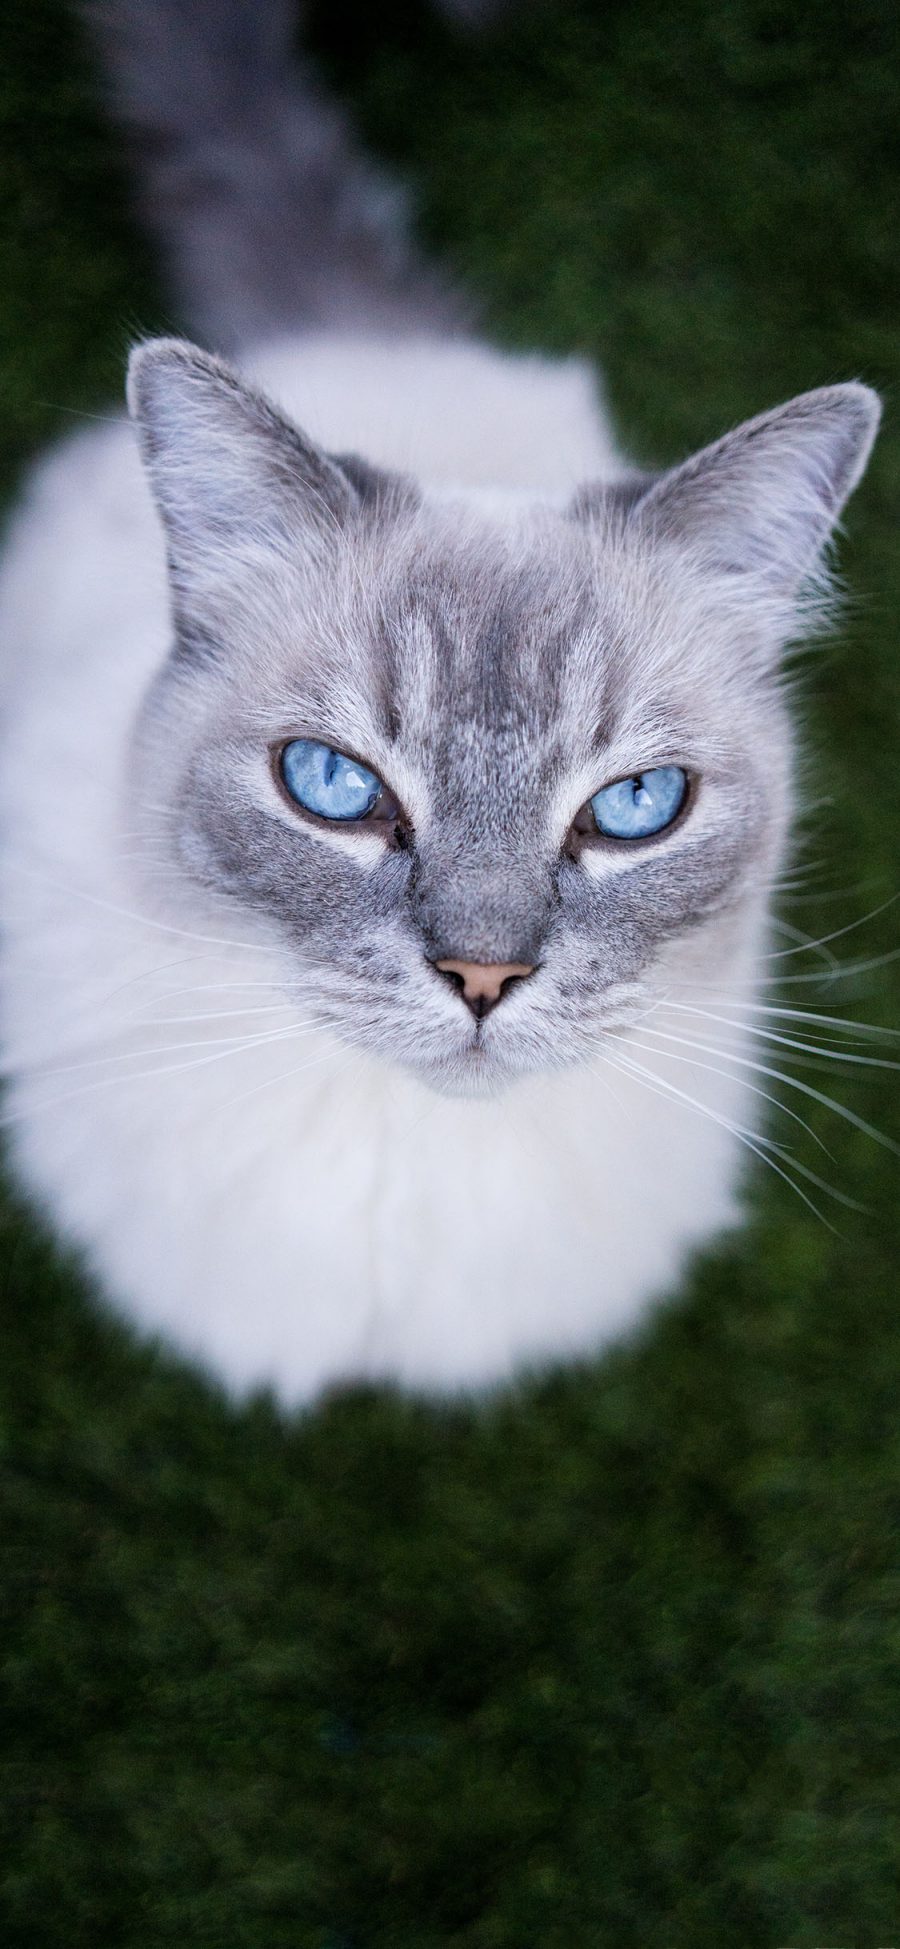 [2436×1125]猫咪 白色 眼瞳 蓝色 霸气 宠物 苹果手机壁纸图片